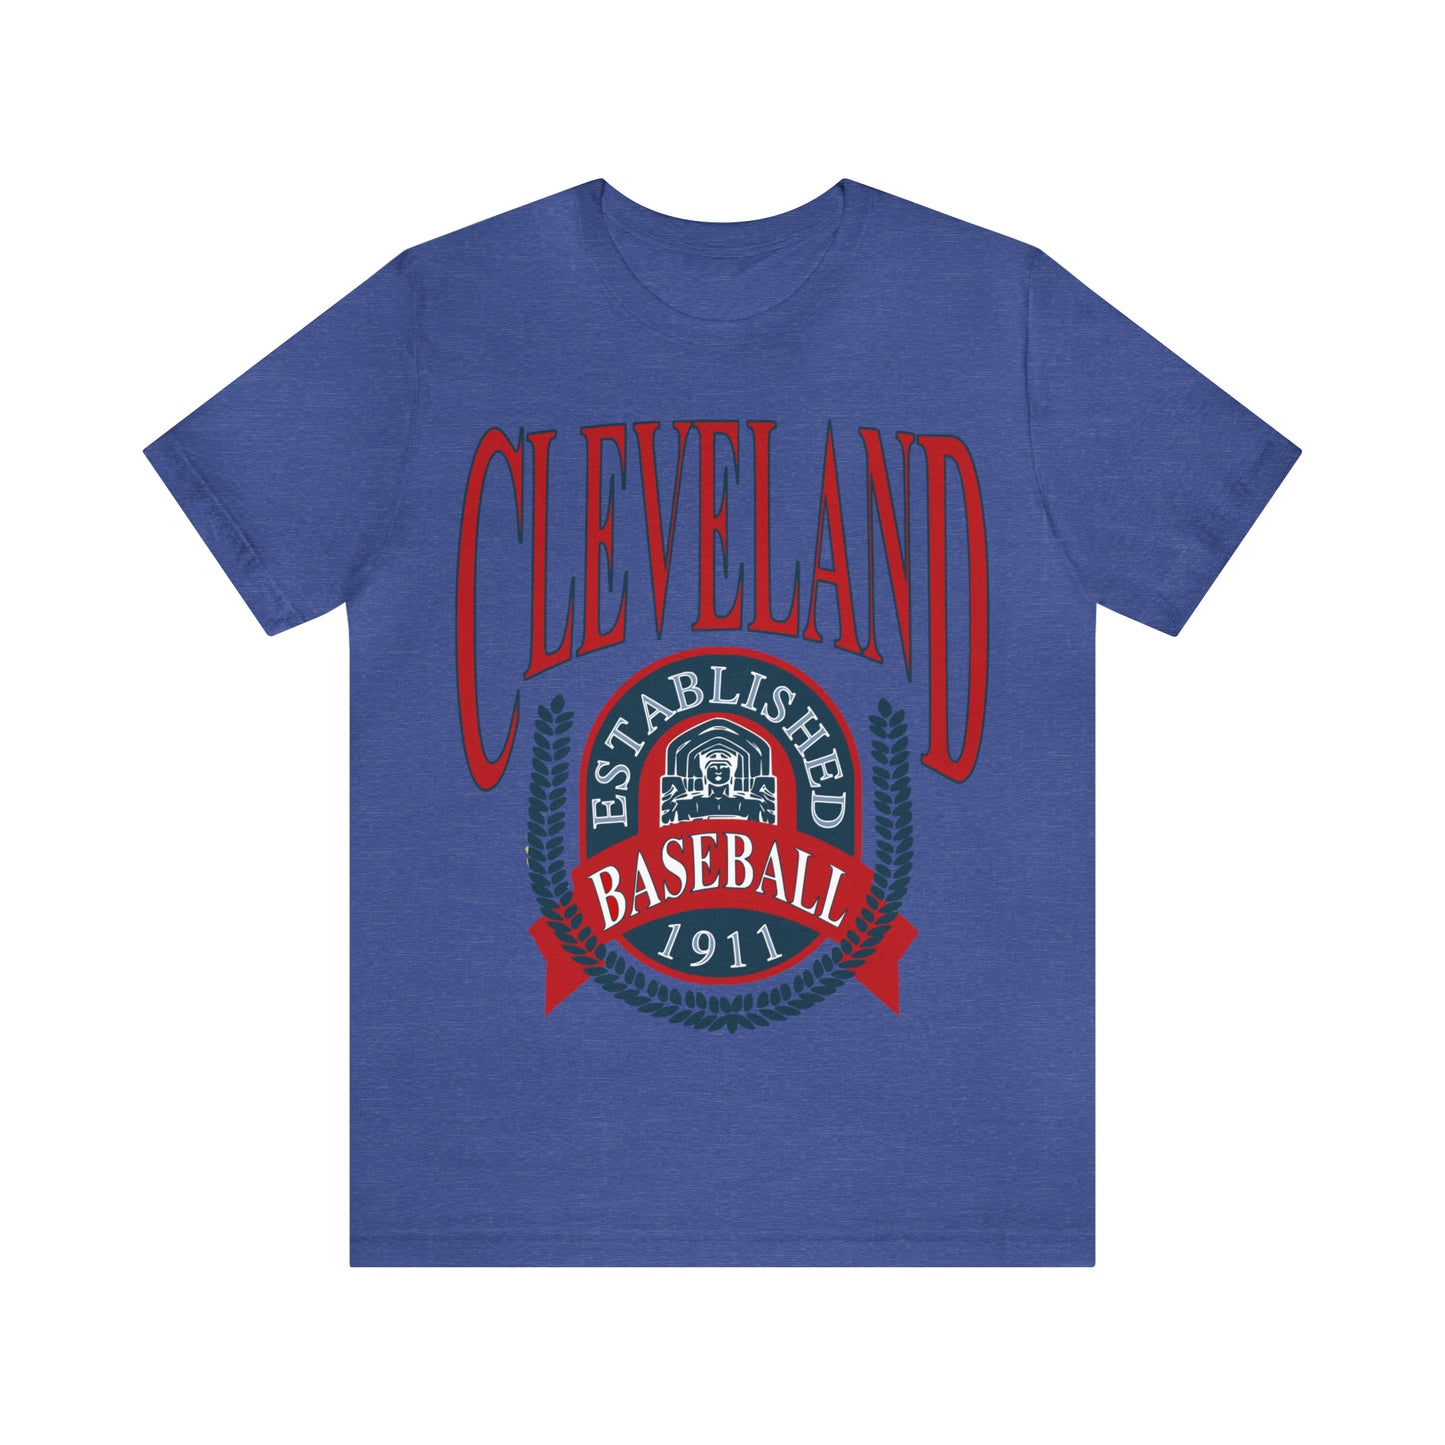 Throwback Cleveland Baseball Tee - Vintage Short Sleeve Unisex T-Shirt